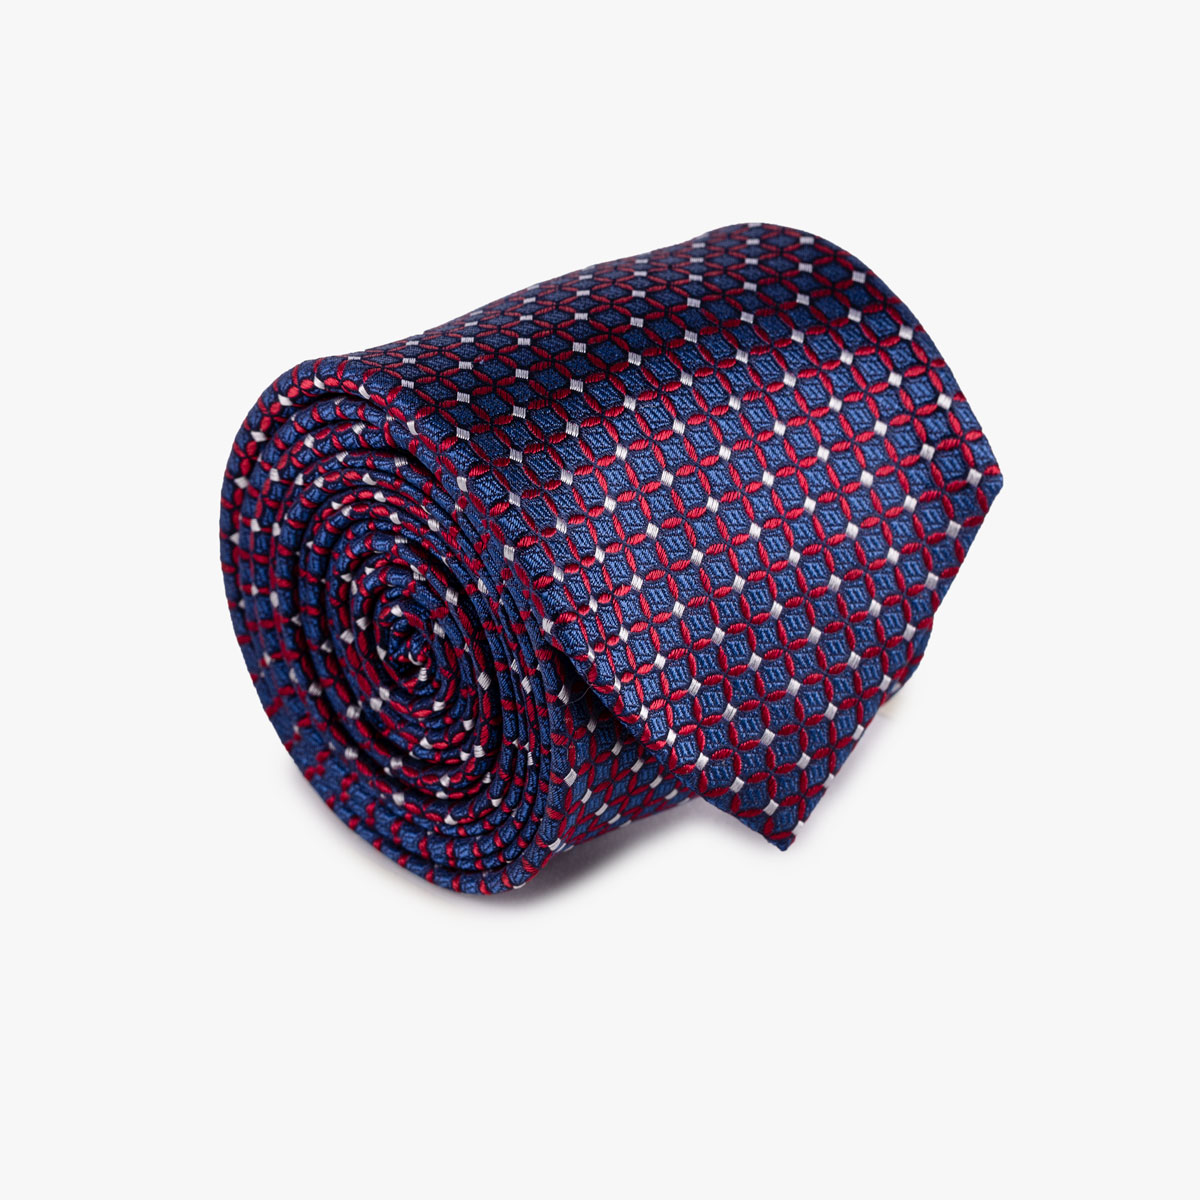 Krawatte aus Seide in dunkelblau mit rotem Muster